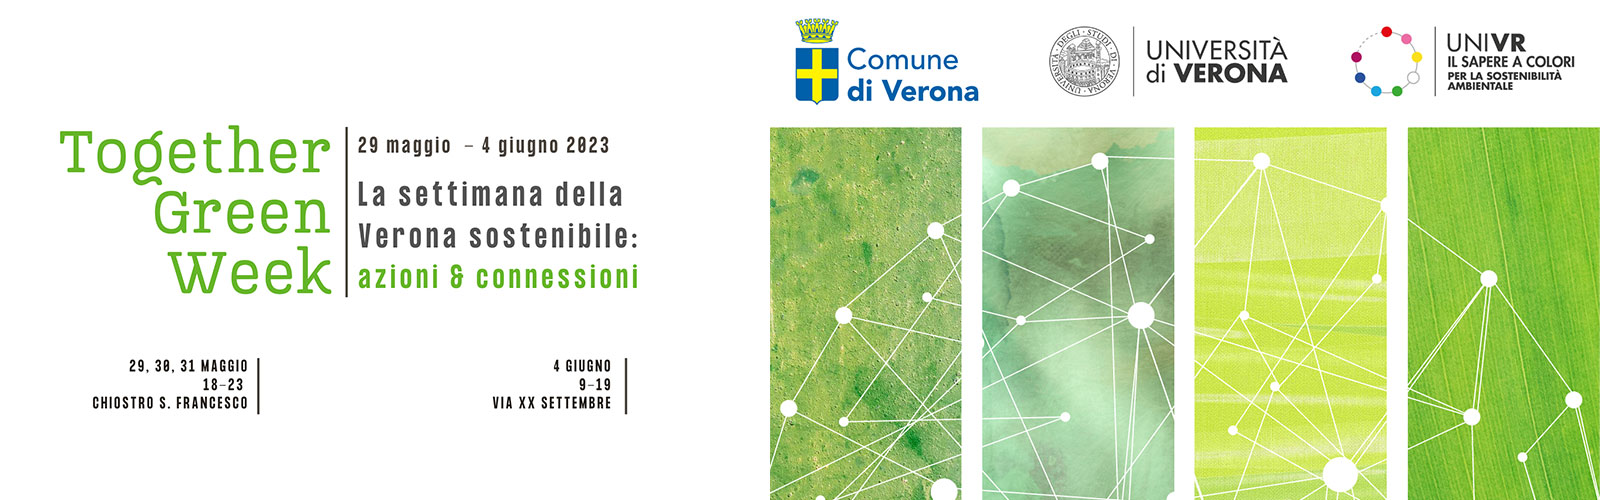 TOGETHER GREEN WEEK La settimana della Verona sostenibile: azioni e connessioni